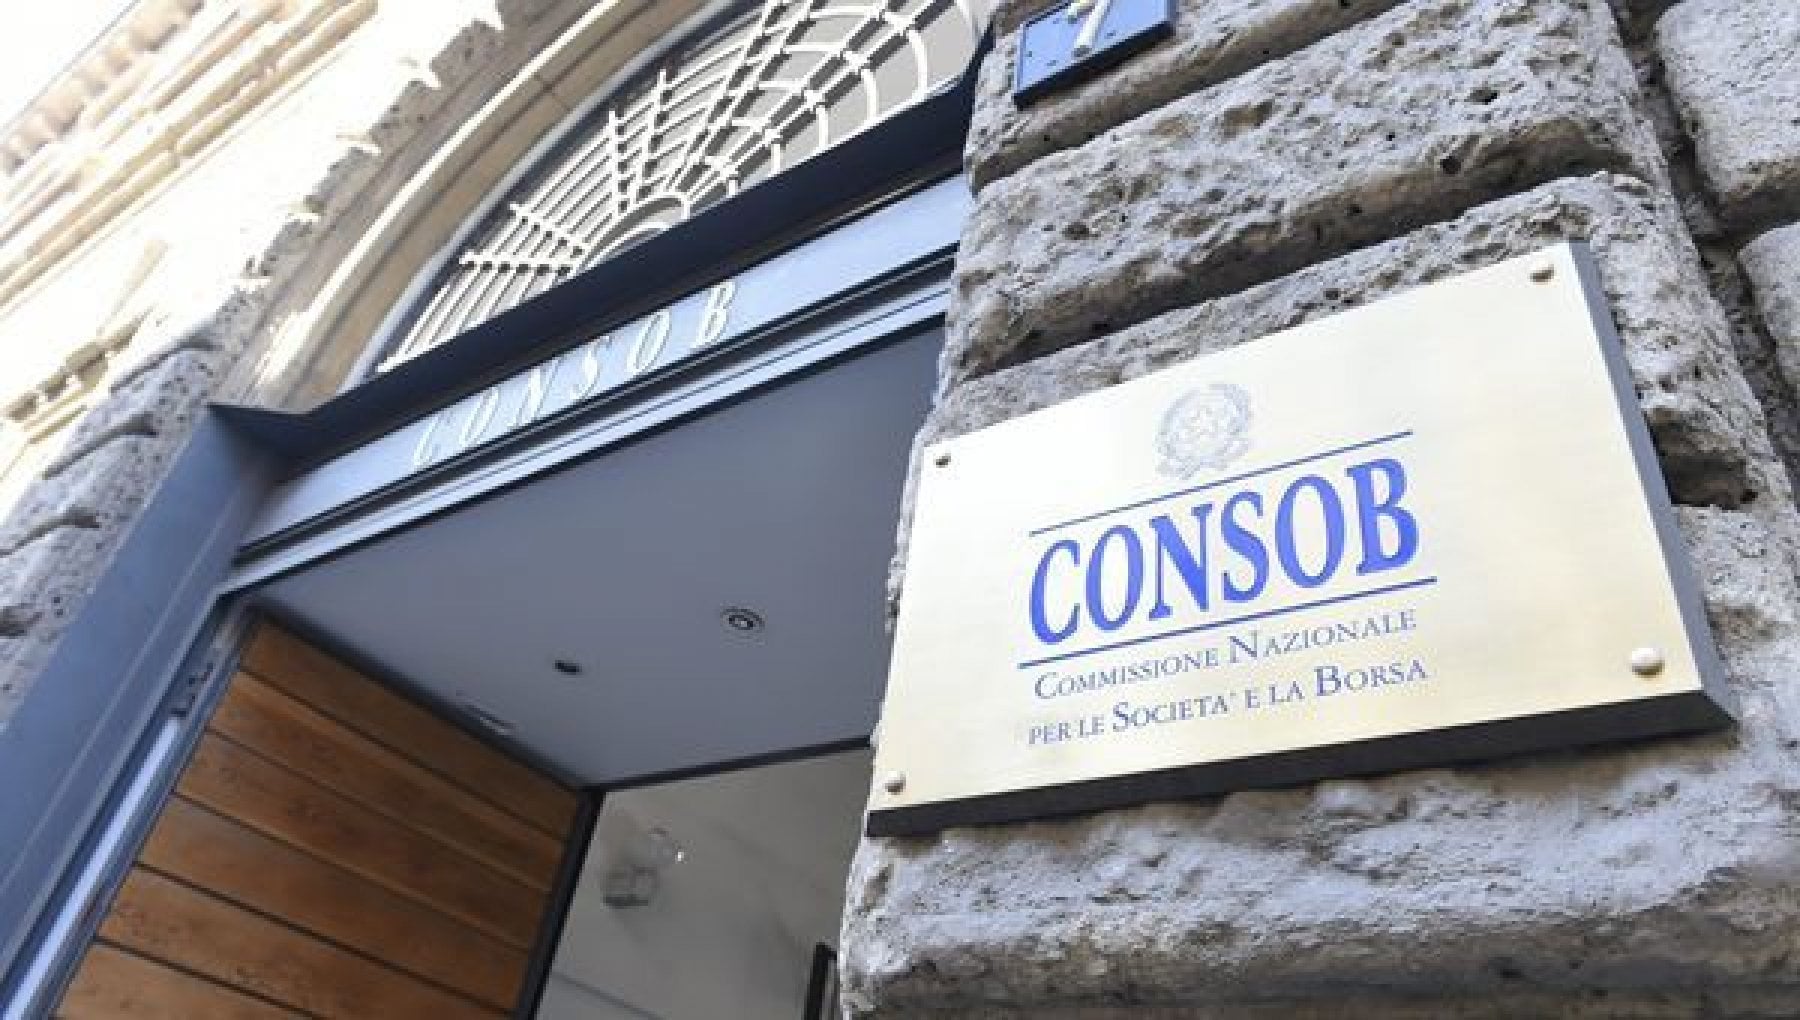 حملة Consob إيطاليا تحظر 5 مواقع إلكترونية غير قانونية